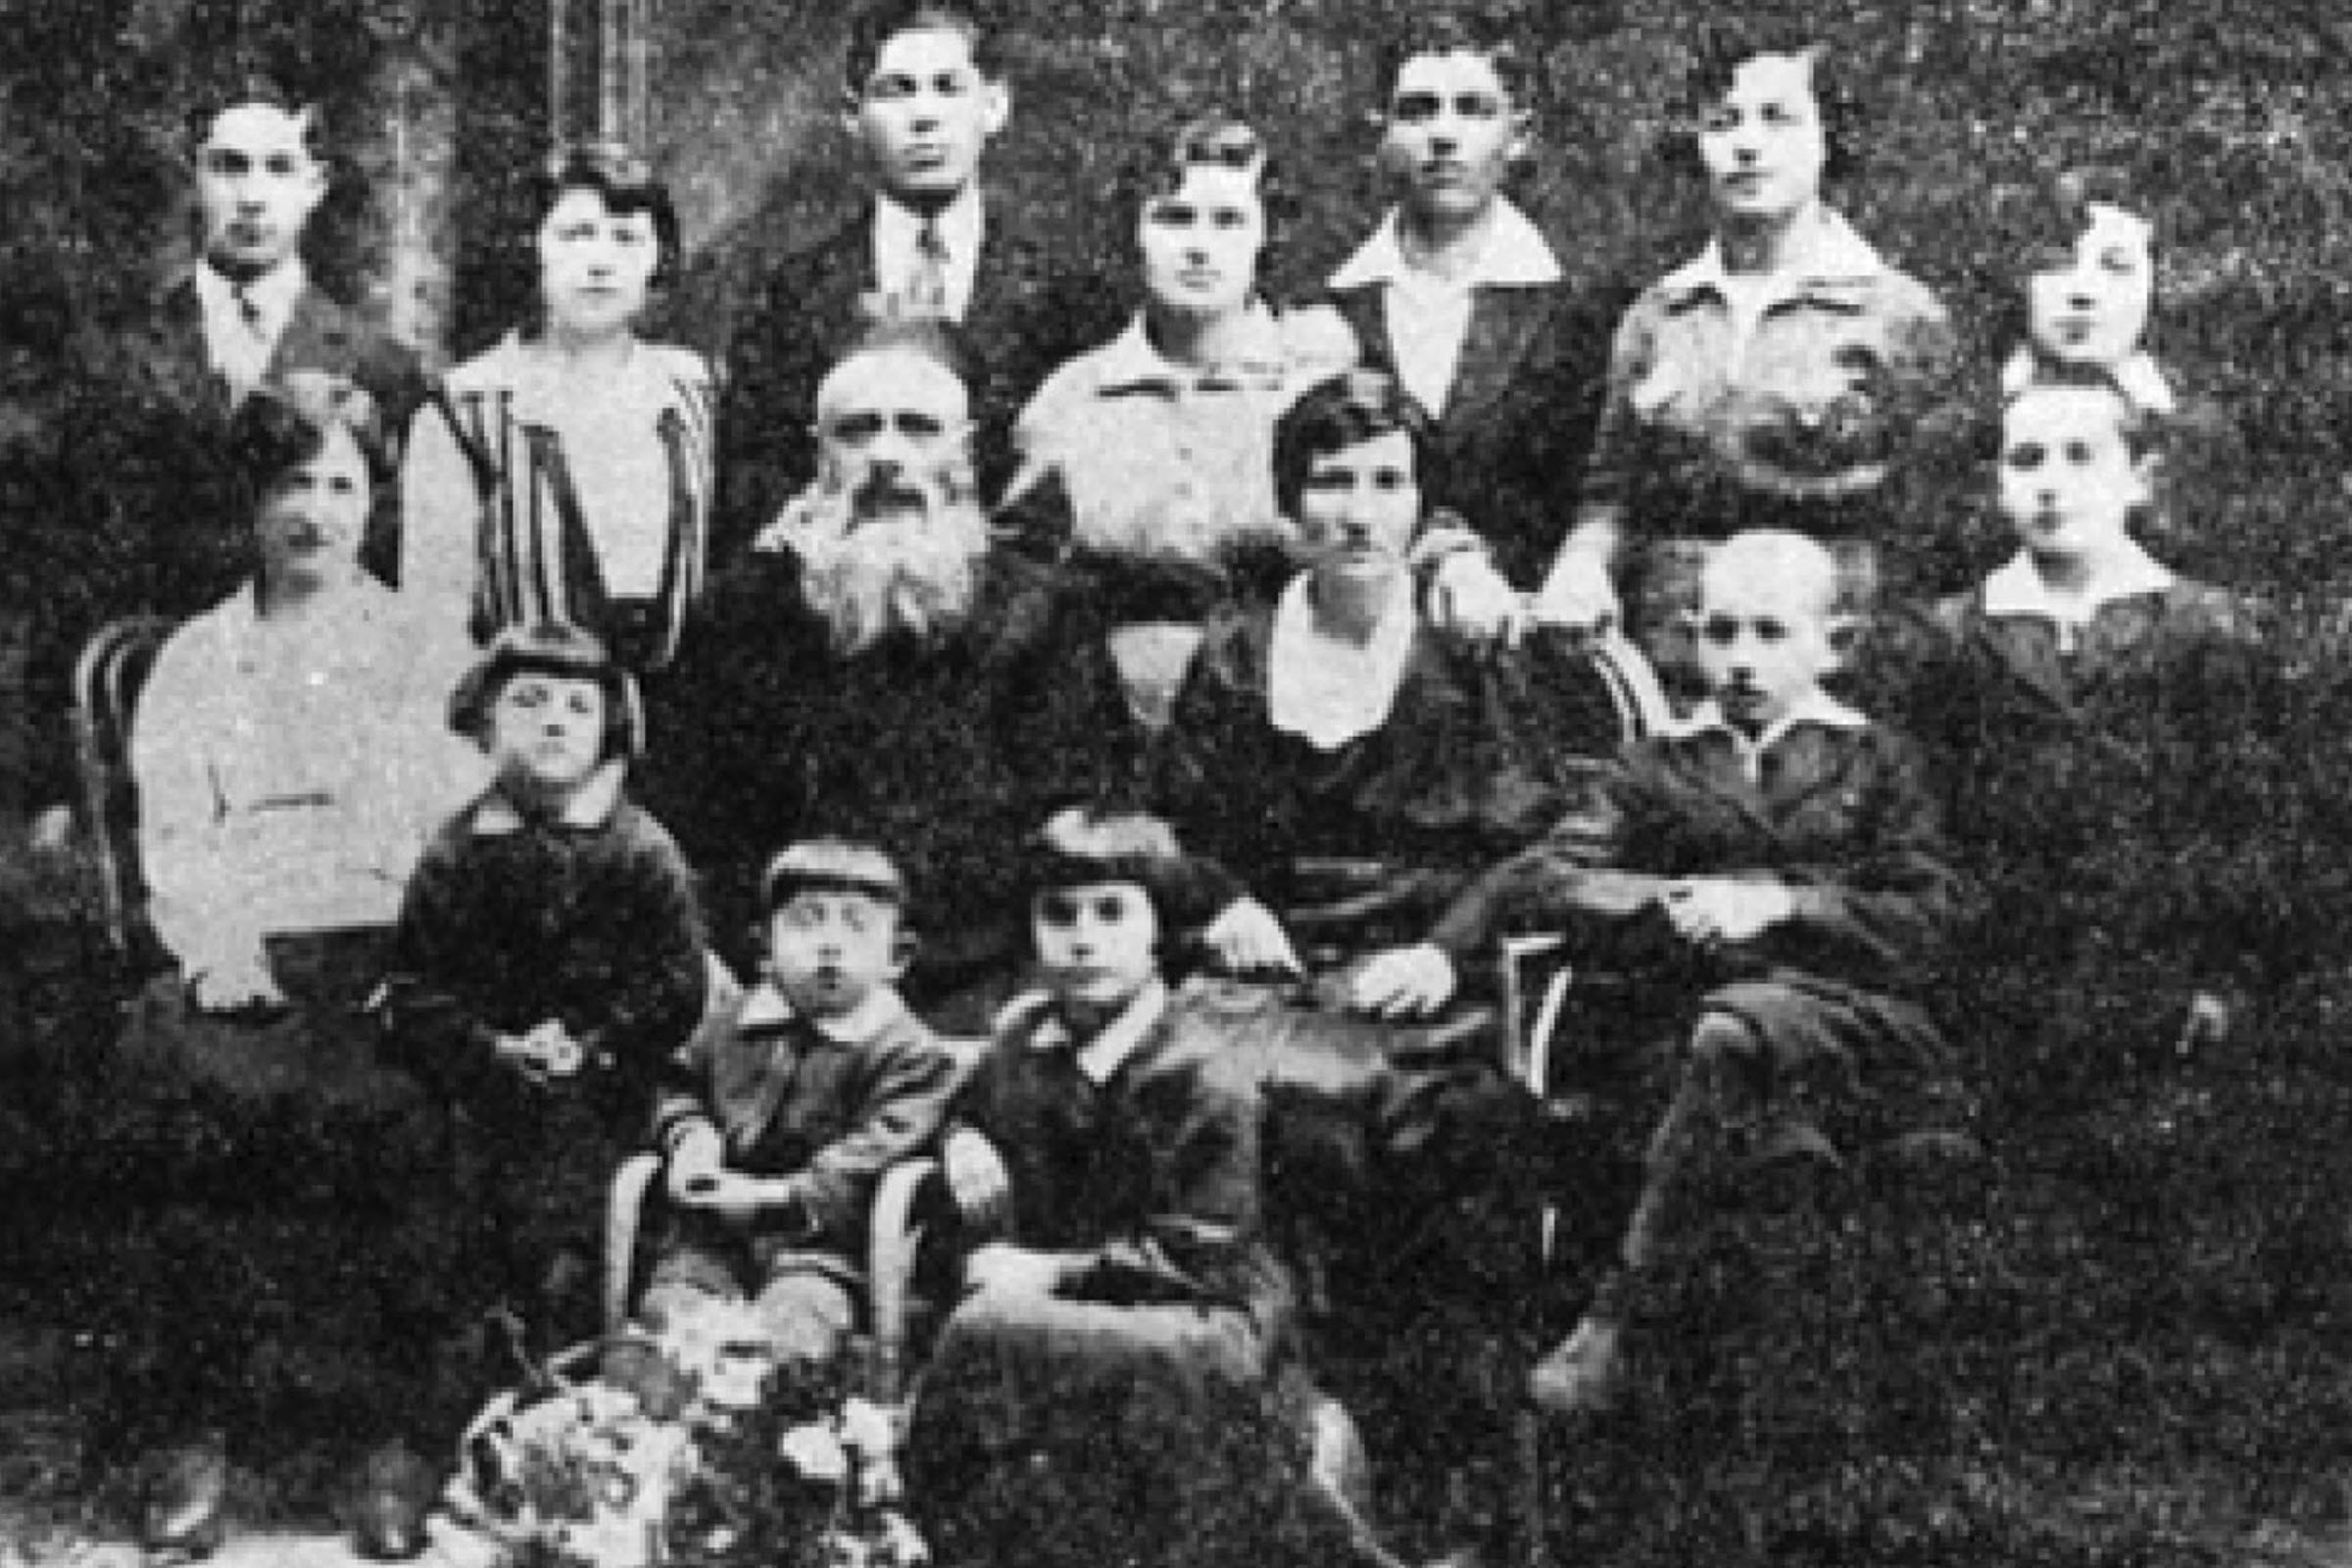 Hirsch Holtzeker descendants